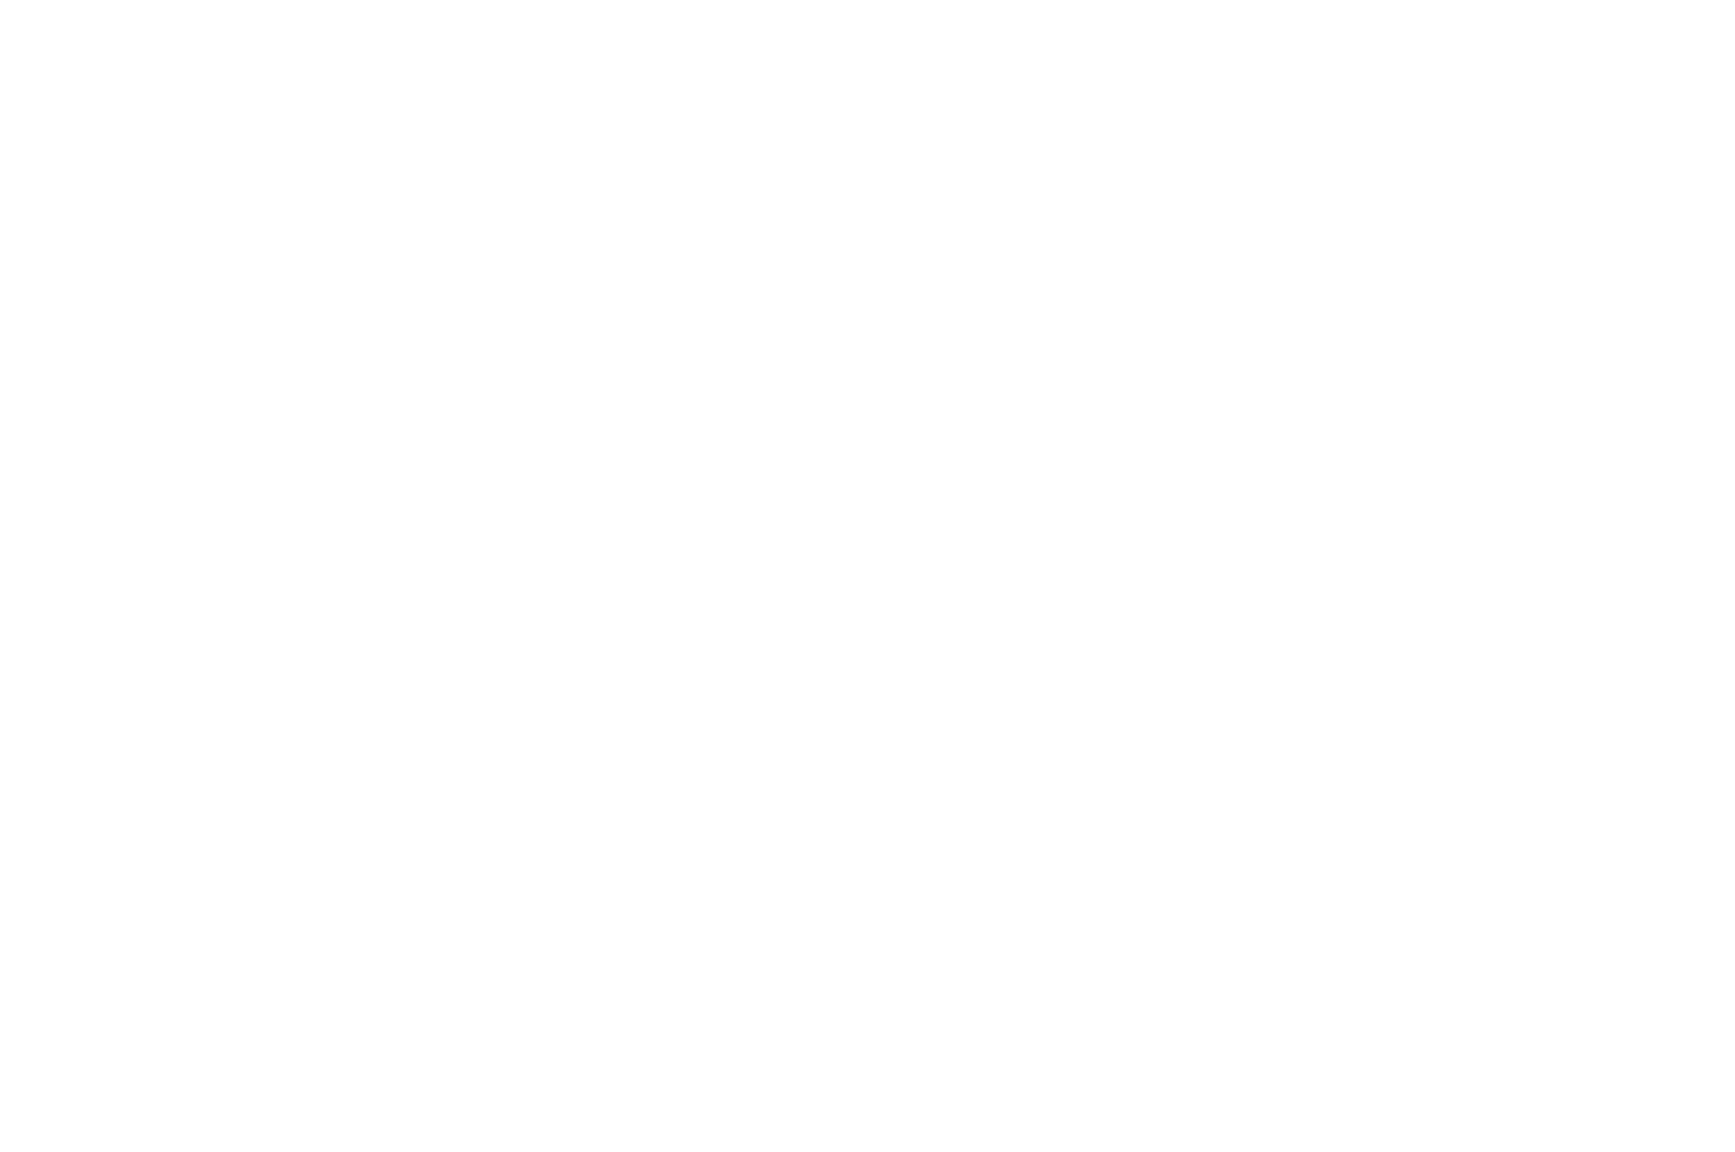 OFFICIAL SELECTION Destination Tourism Films - Finisterra Brazil Film Art Tourism Festival - 2023 Event 5 June